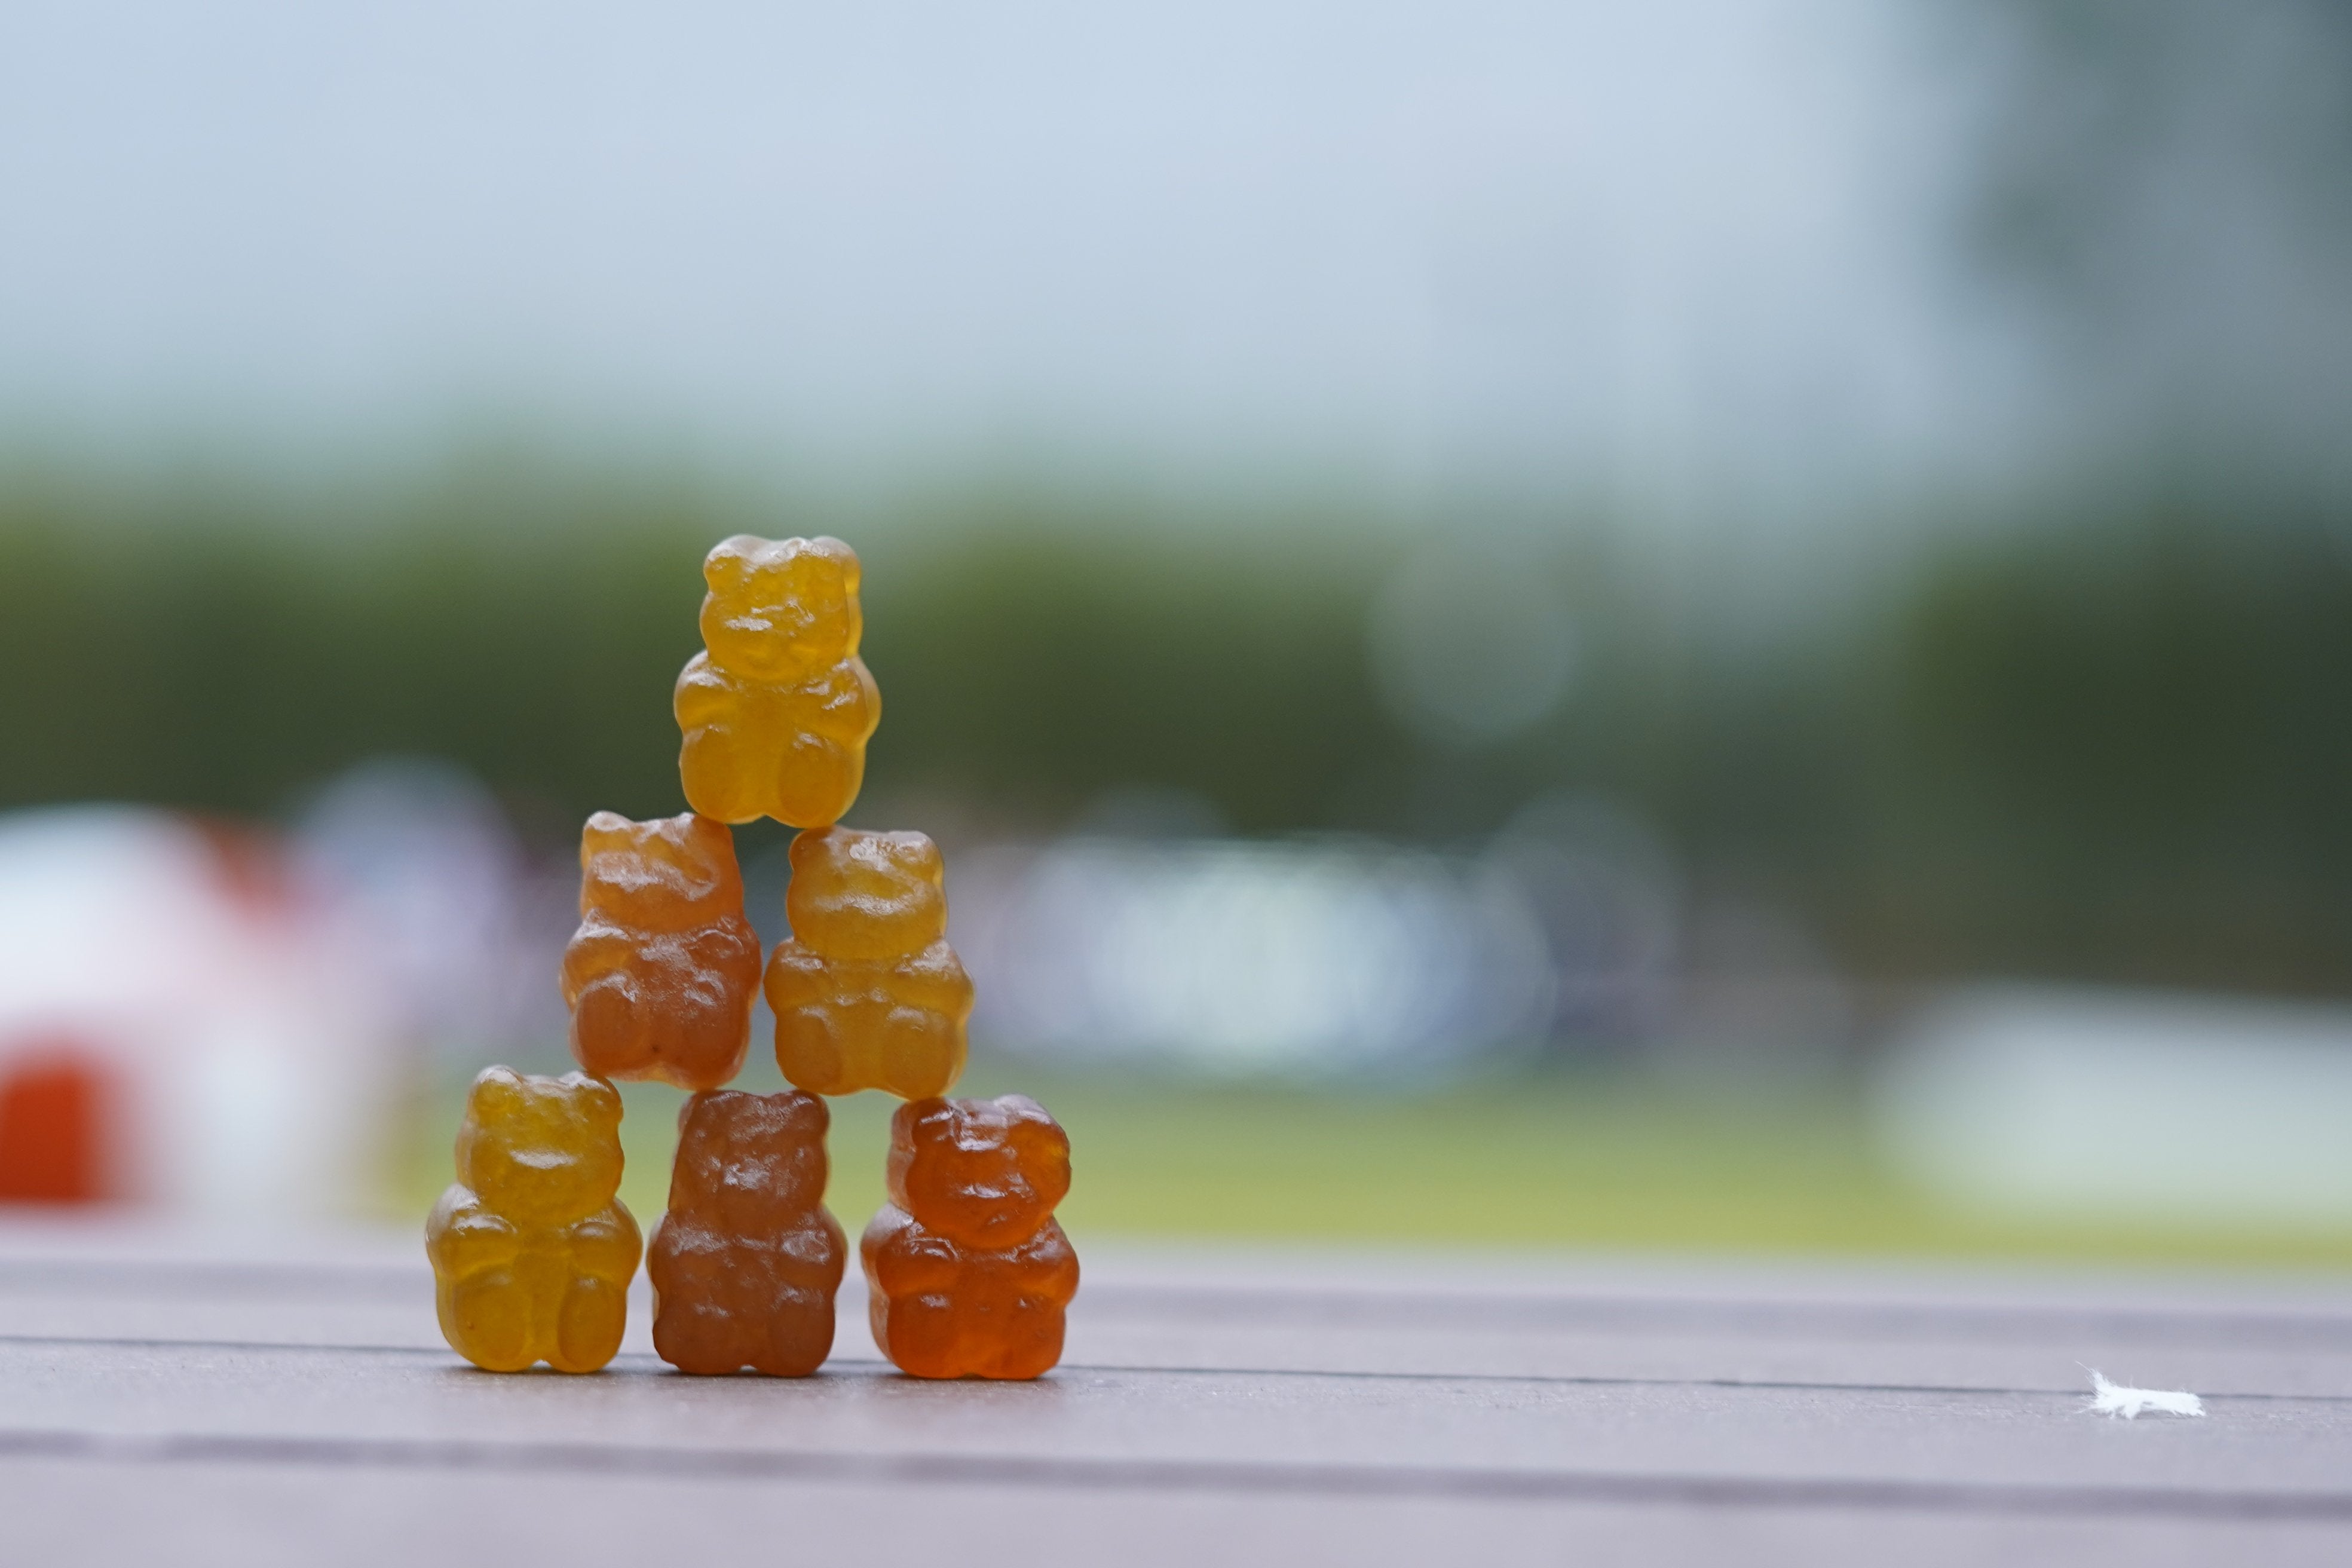 QKG01: Kids Gummy Vites Pro Health